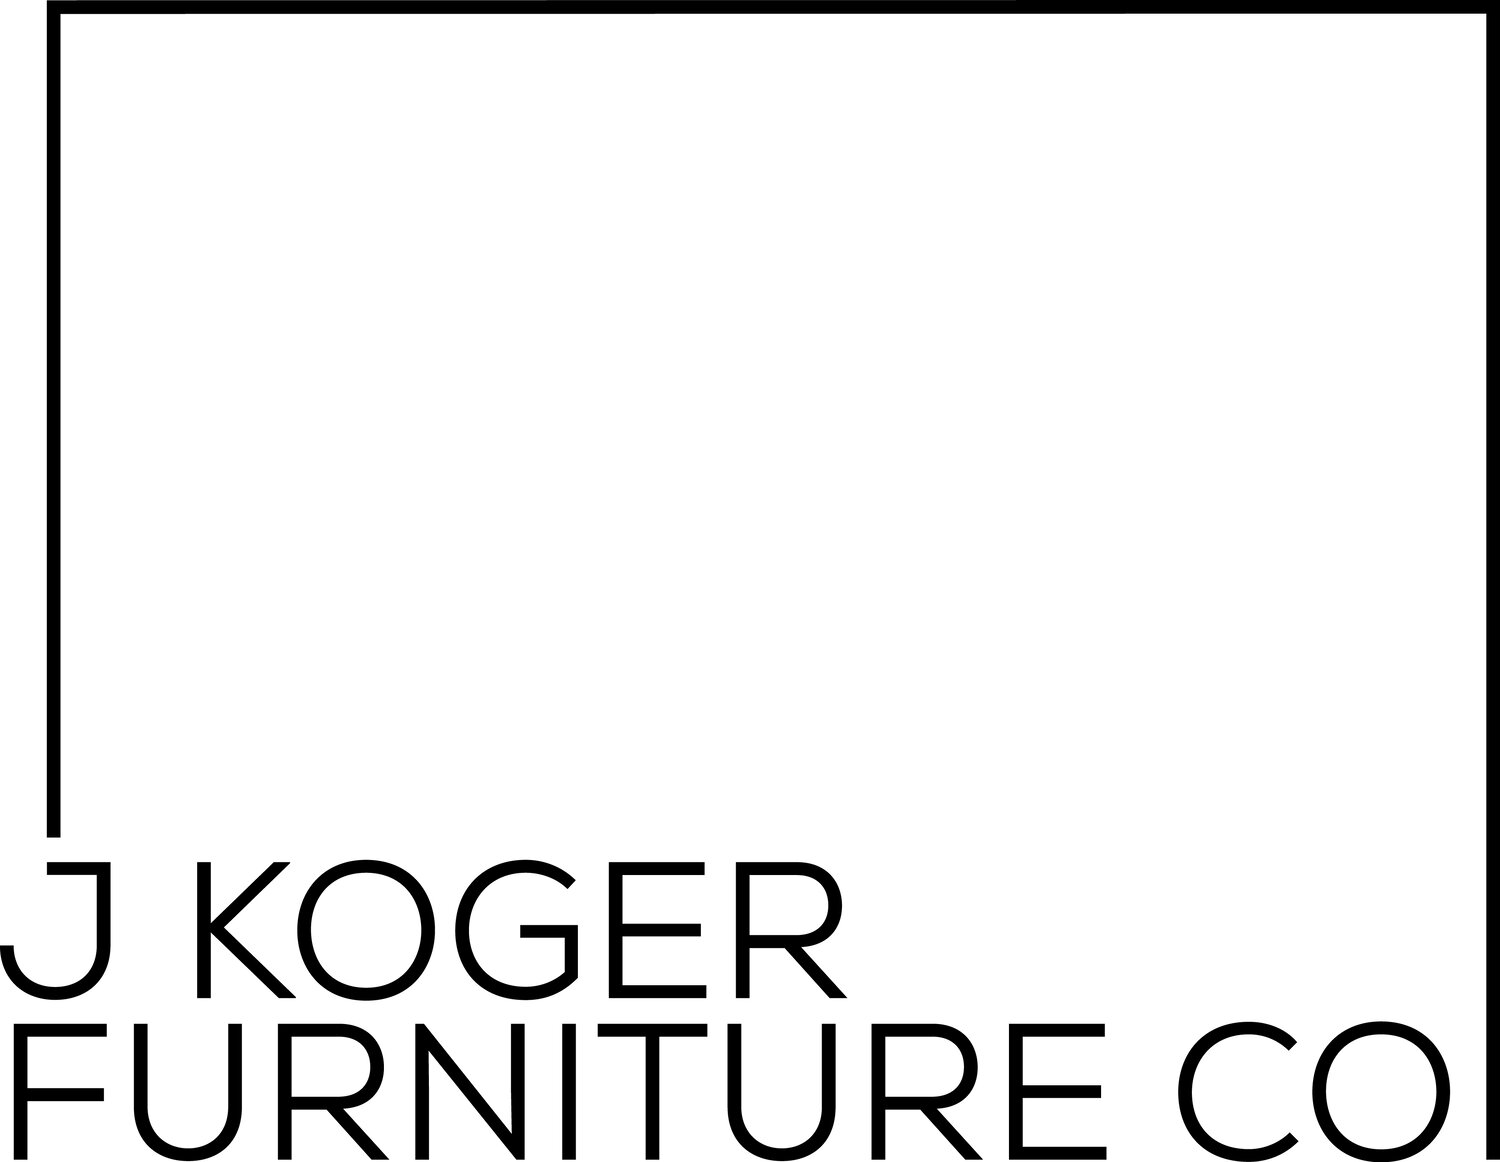 J Koger Furniture Co